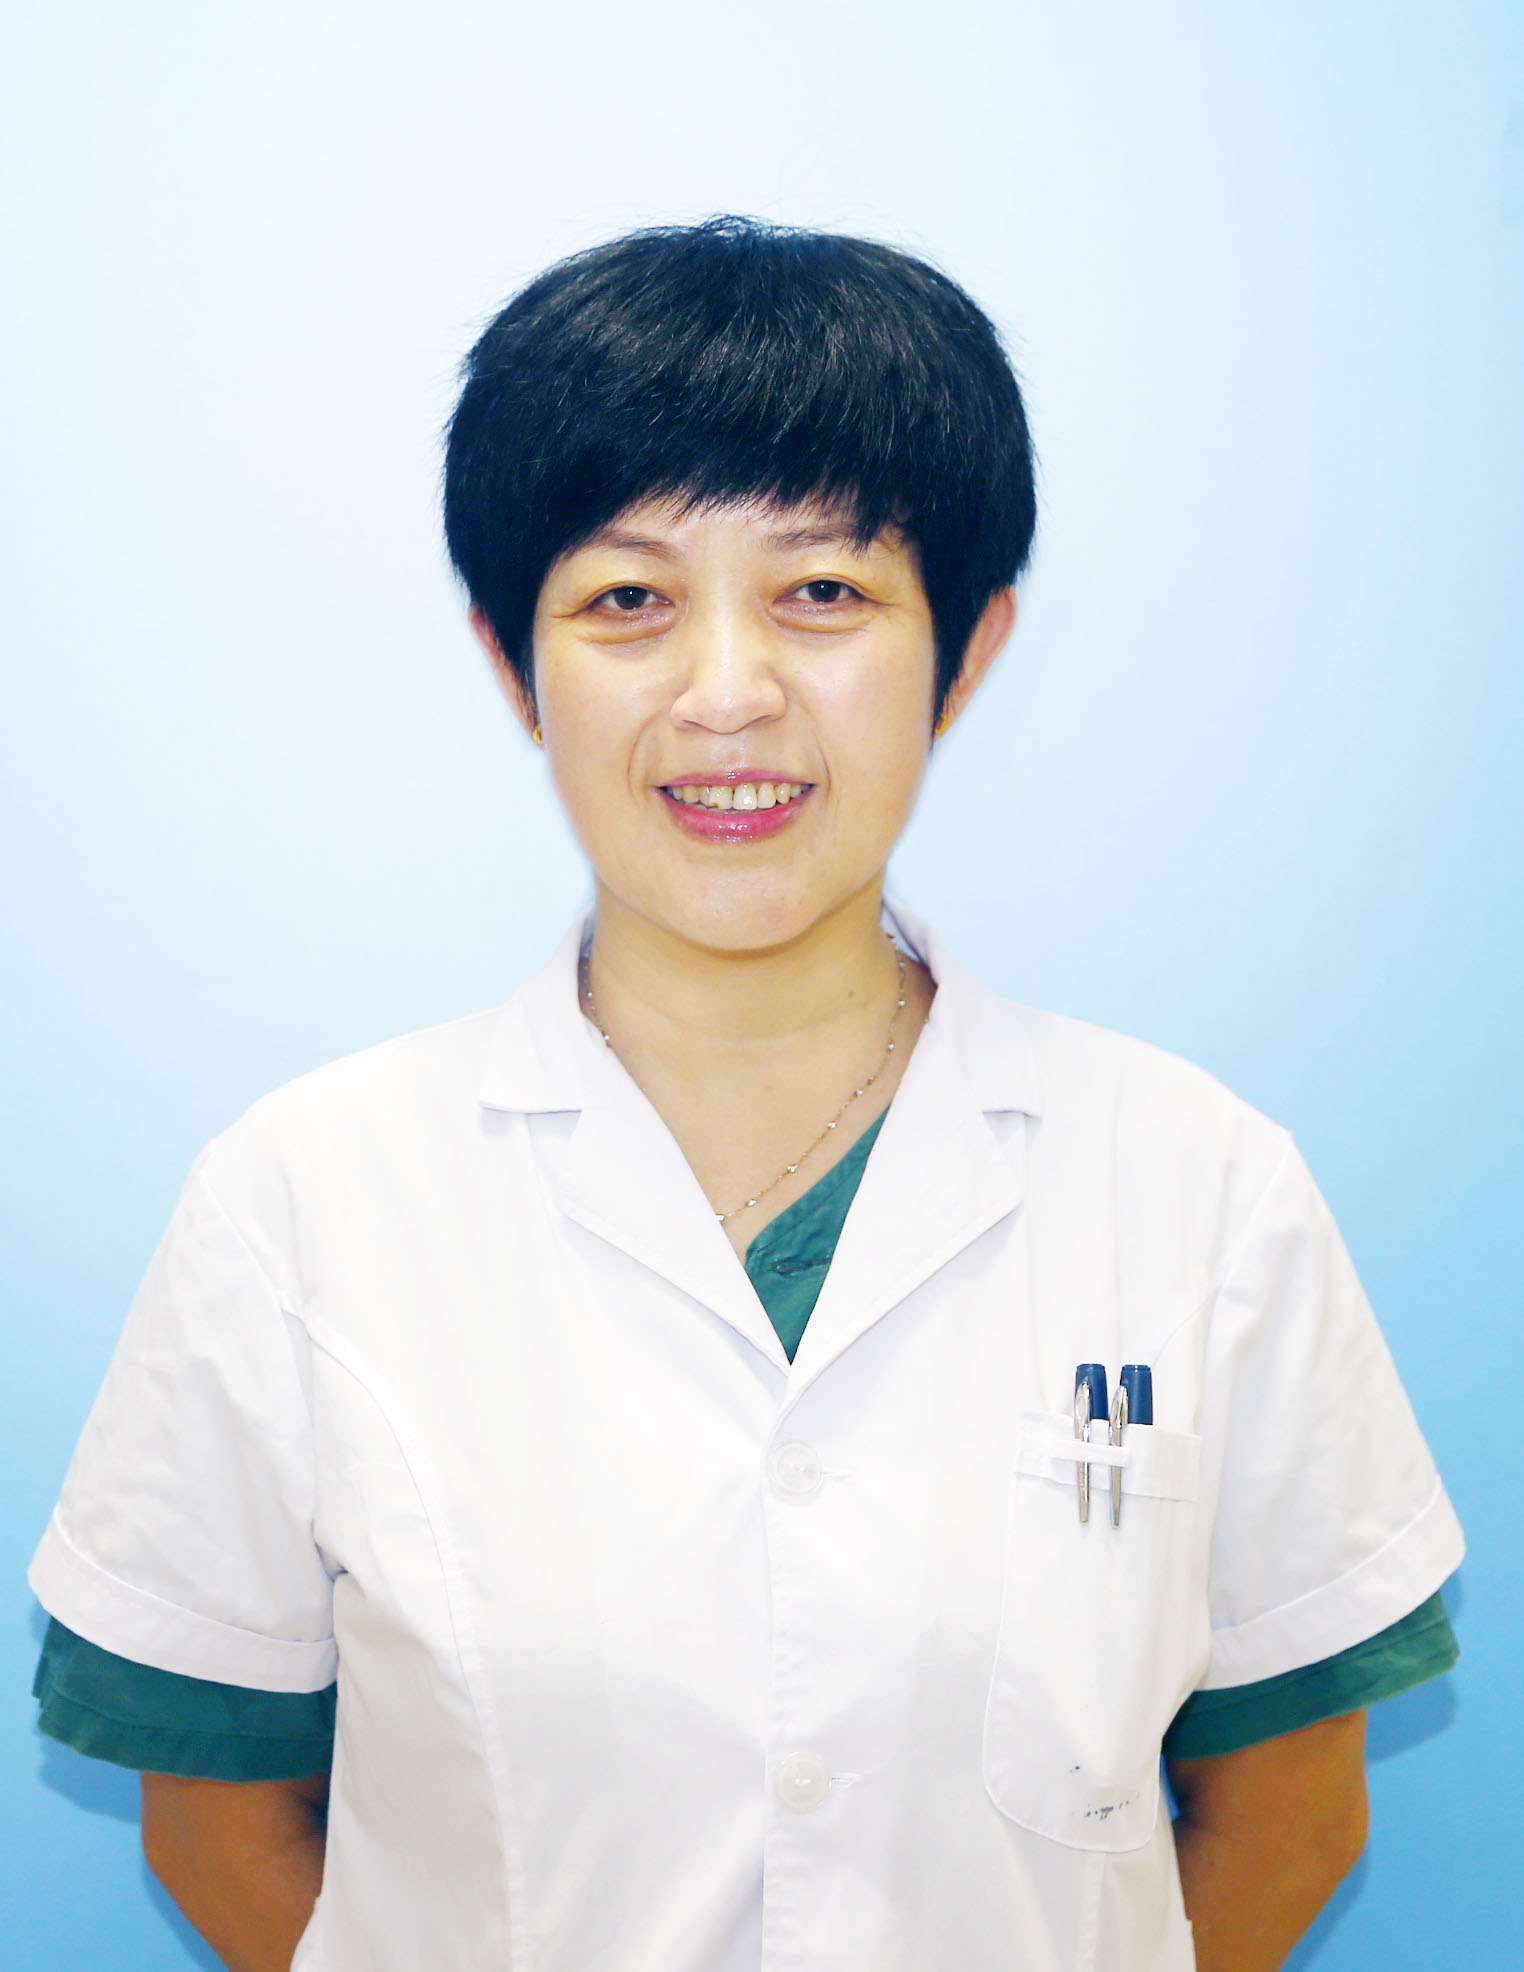 唐山市妇幼保健院妇科医生列表